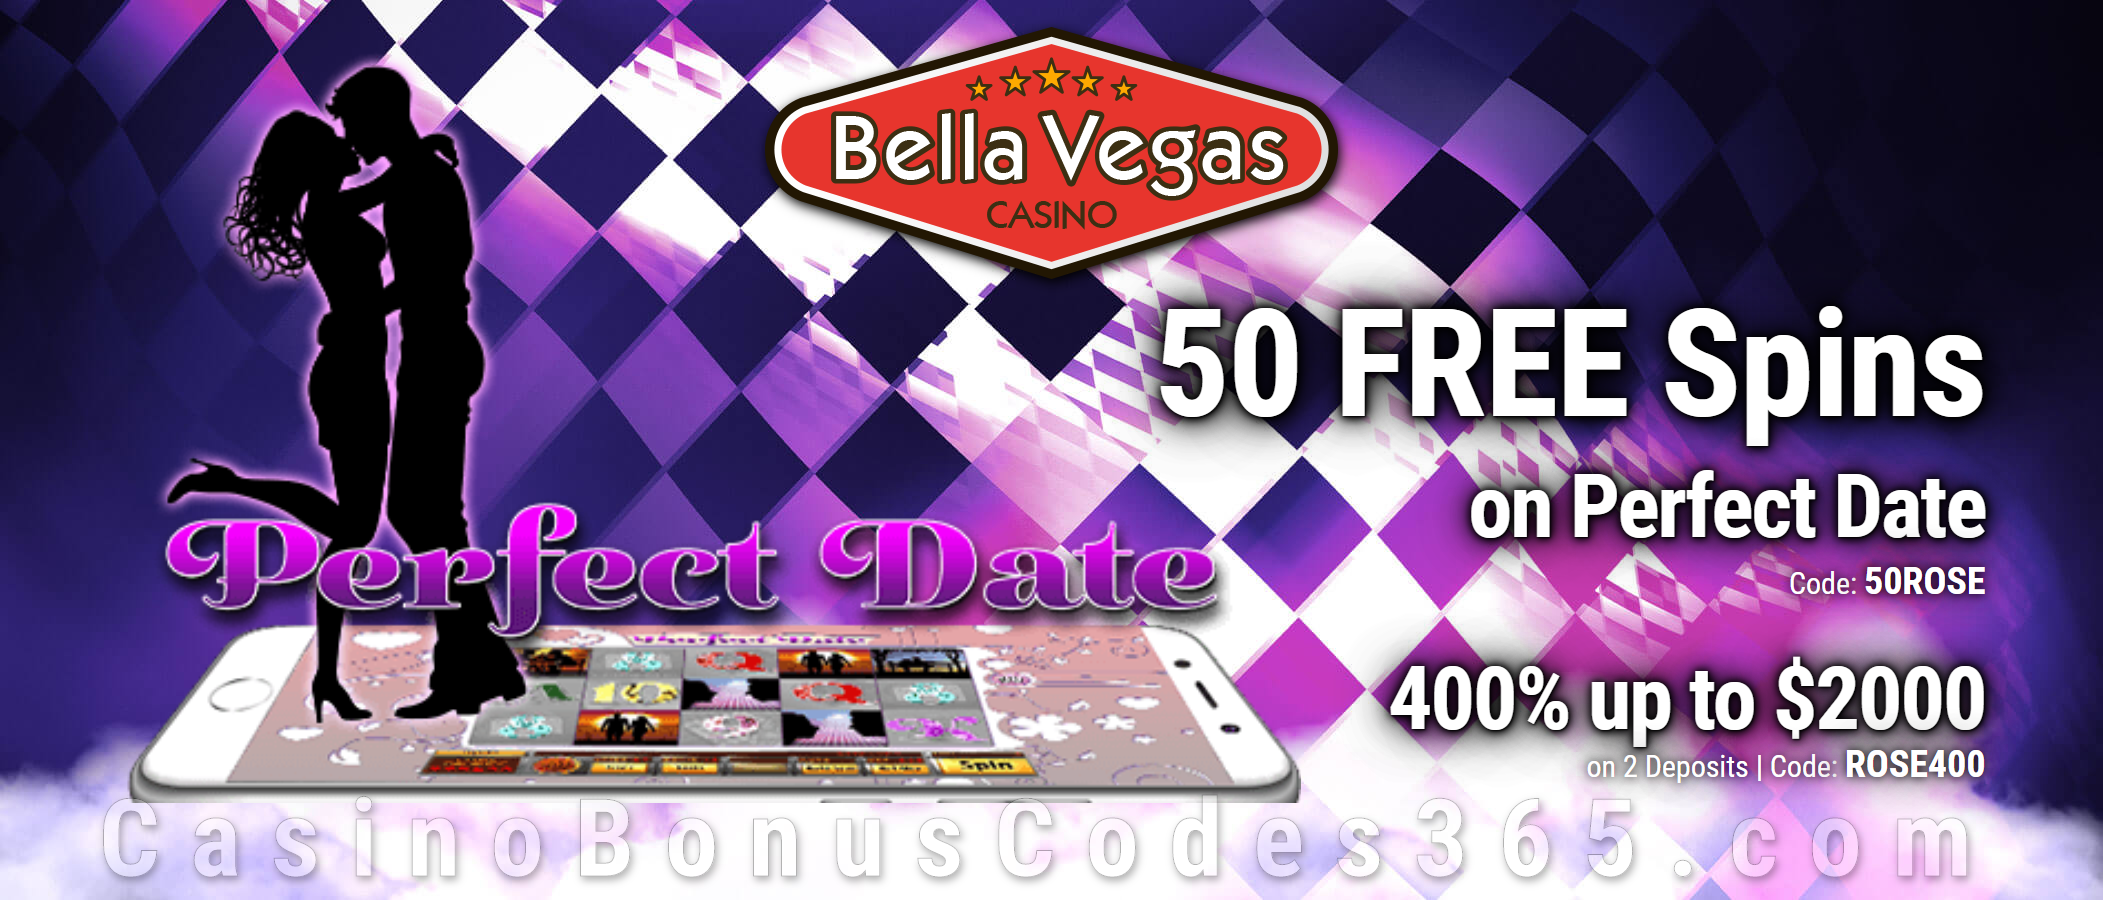 Bella Vegas No Deposit Bonus Codes August 2019